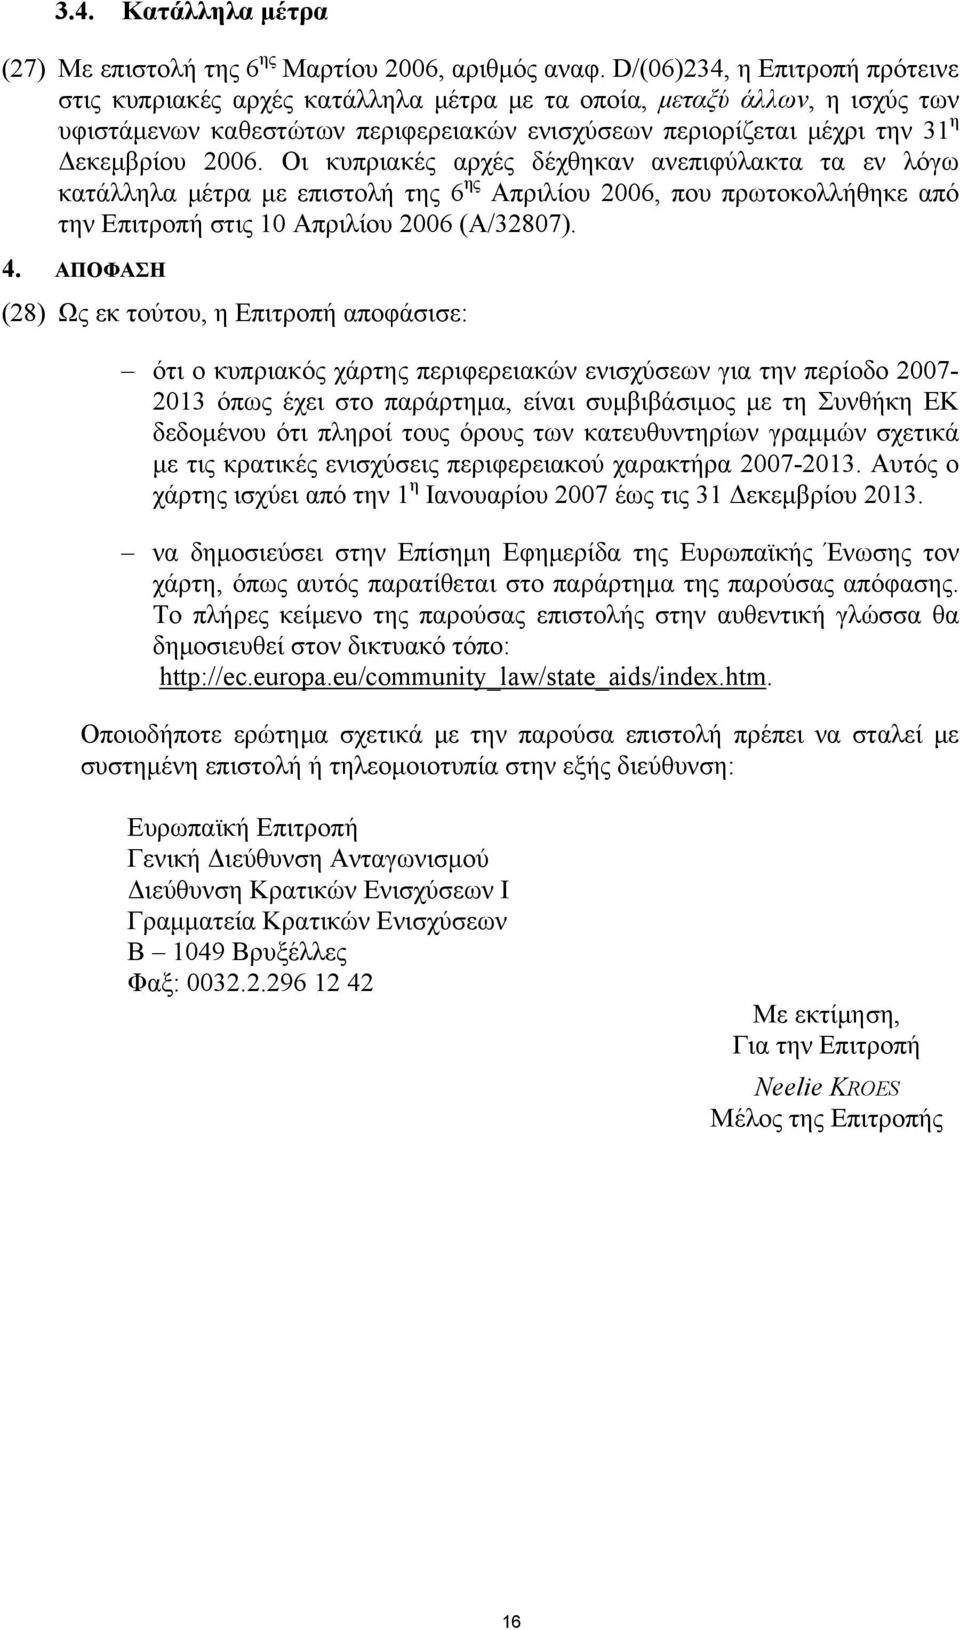 Οι κυπριακές αρχές δέχθηκαν ανεπιφύλακτα τα εν λόγω κατάλληλα μέτρα με επιστολή της 6 ης Απριλίου 2006, που πρωτοκολλήθηκε από την Επιτροπή στις 10 Απριλίου 2006 (A/32807). 4.